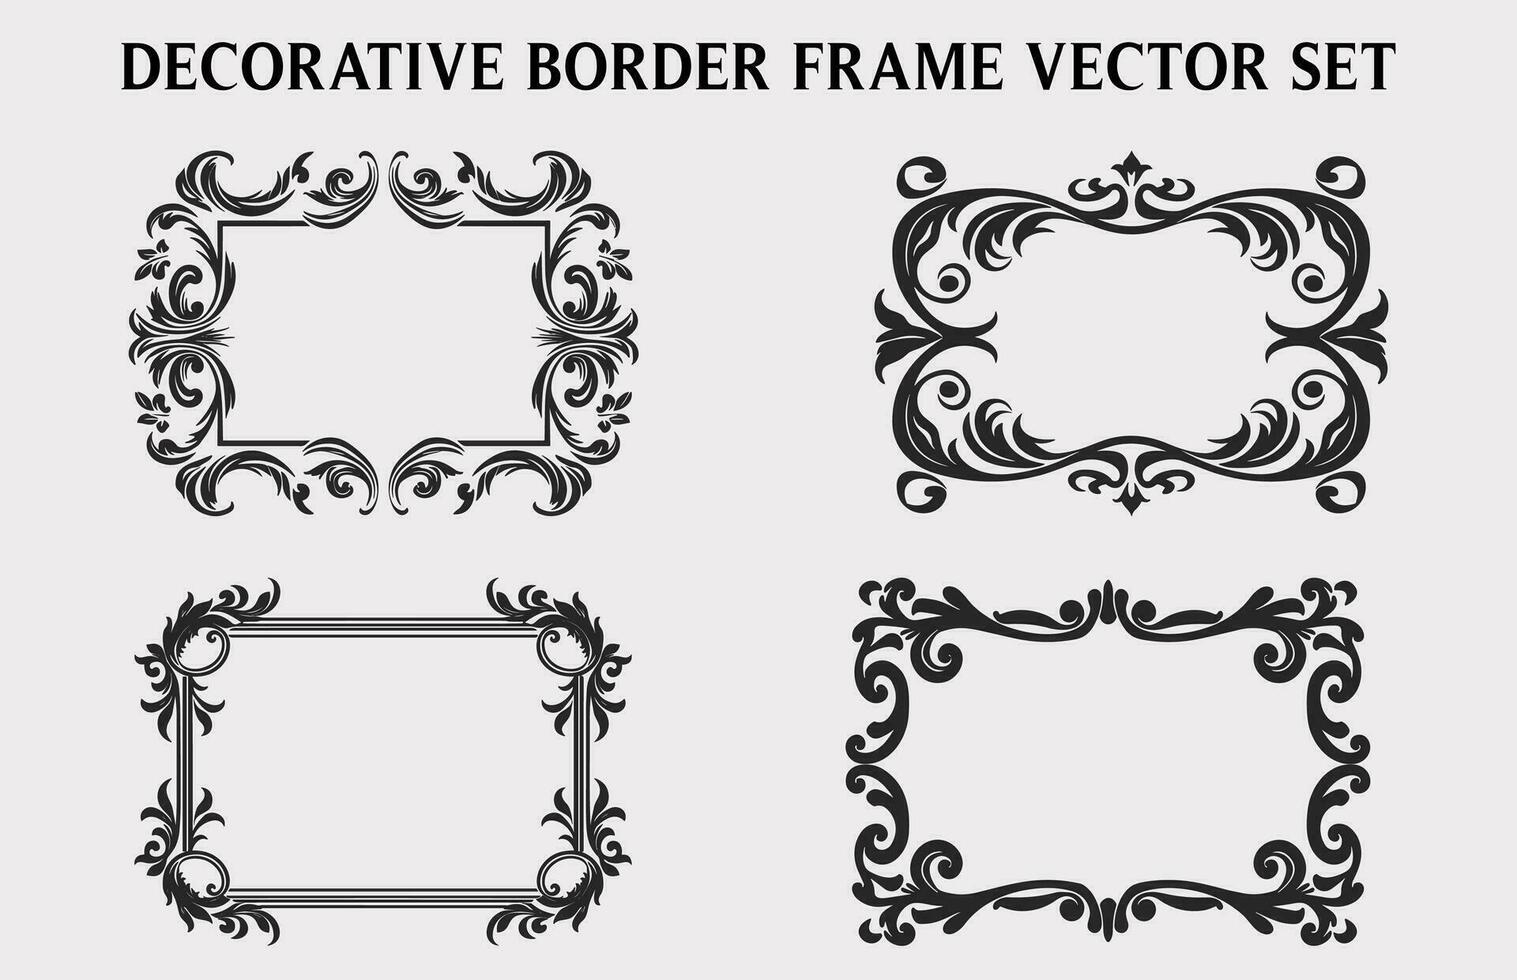 Clásico decorativo ornamental rectángulo marco vector colocar, retro vector ornamental fronteras y filigrana floral adornos